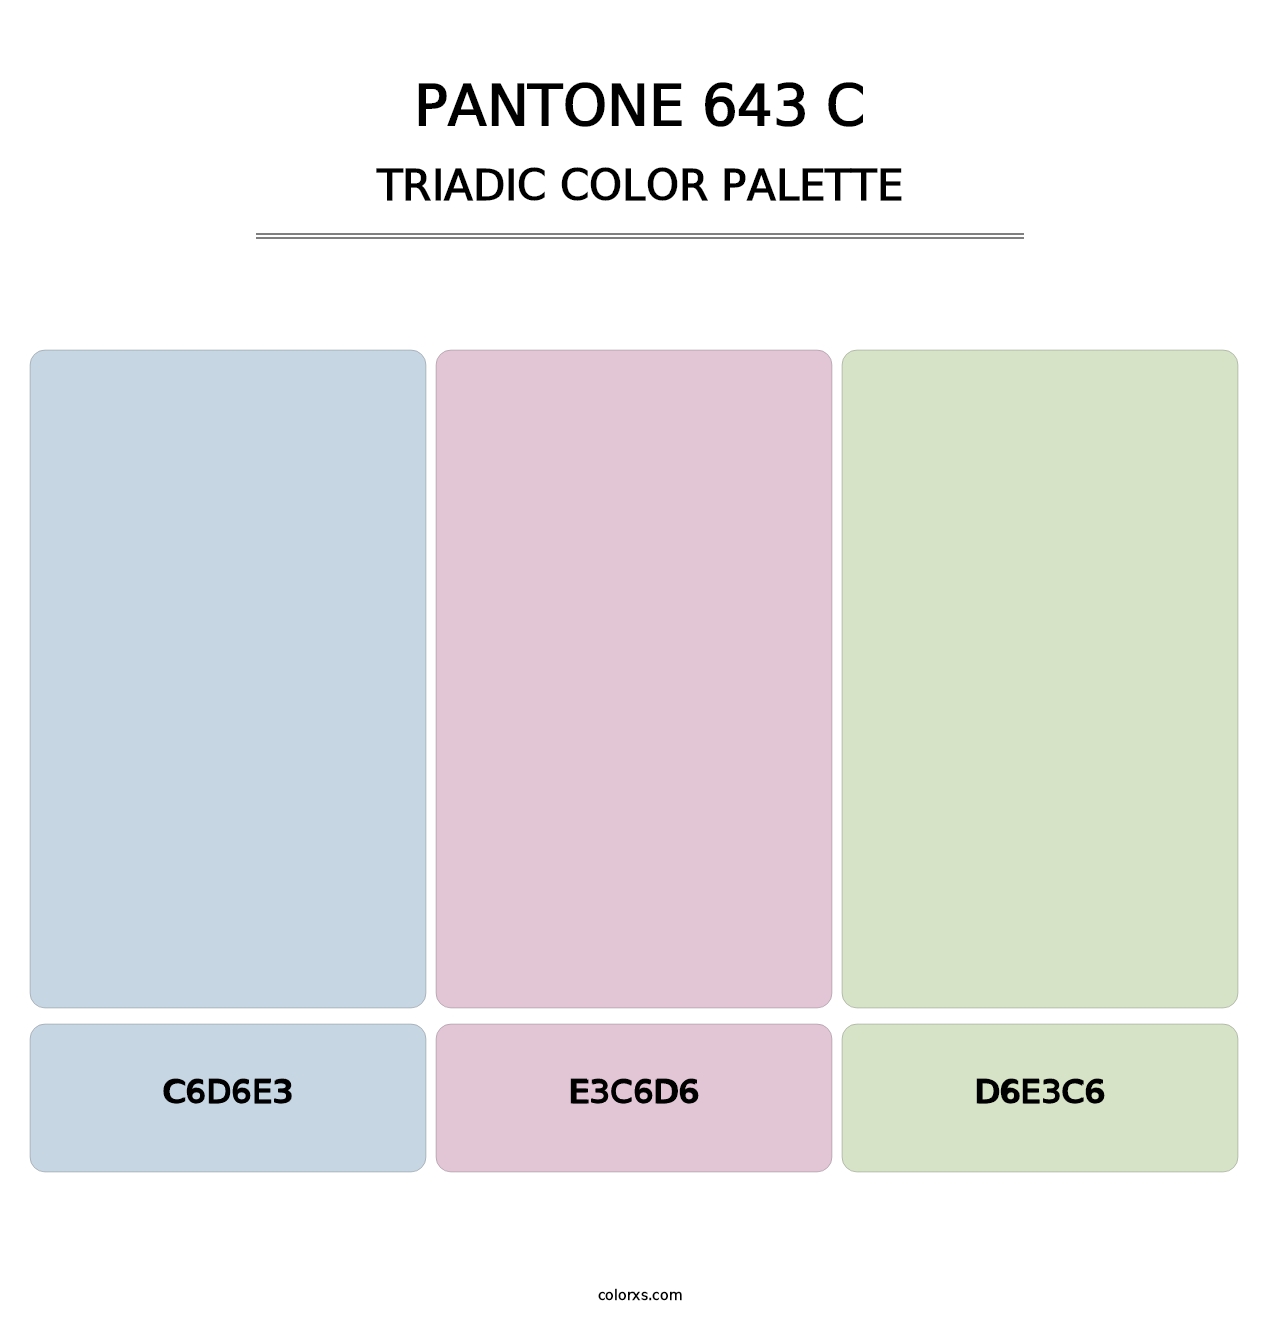 PANTONE 643 C - Triadic Color Palette